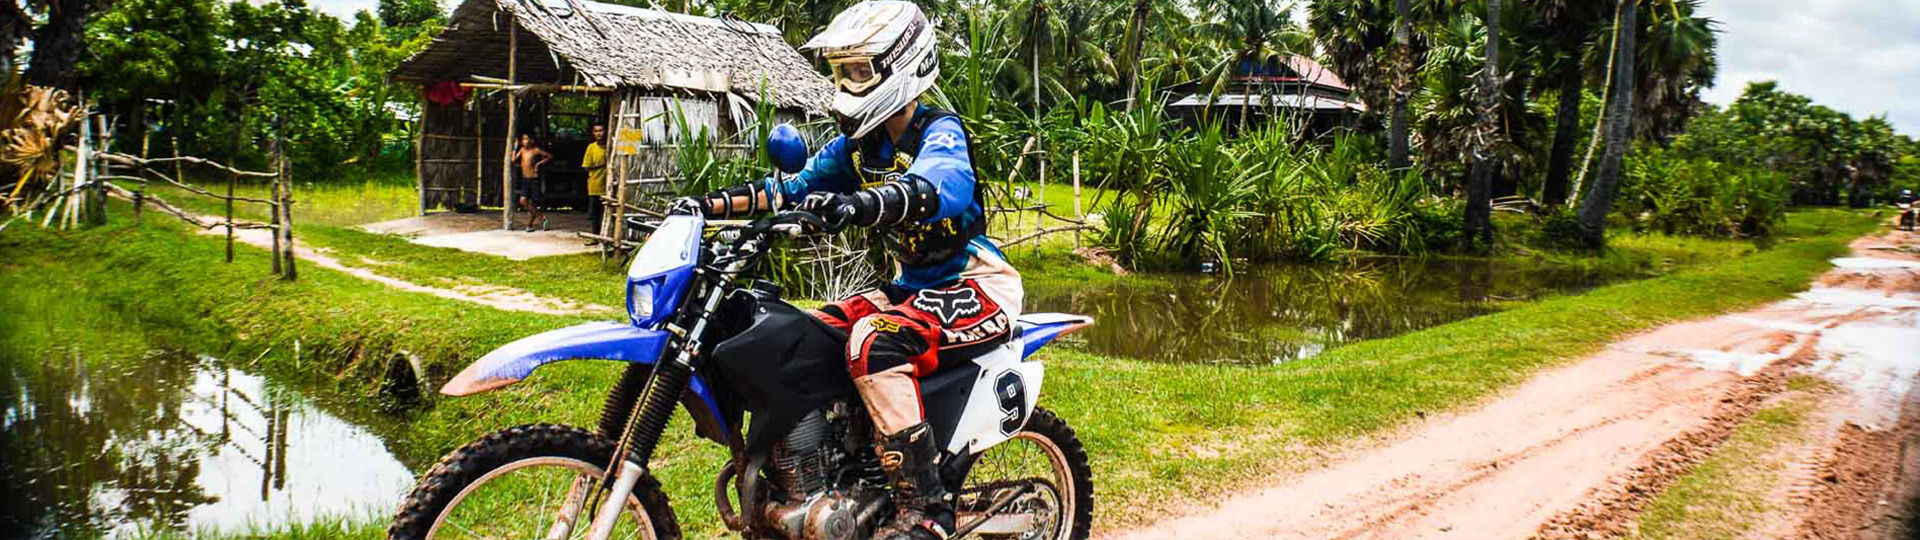 Saigon Motorcycle Tour Around – 5 Days